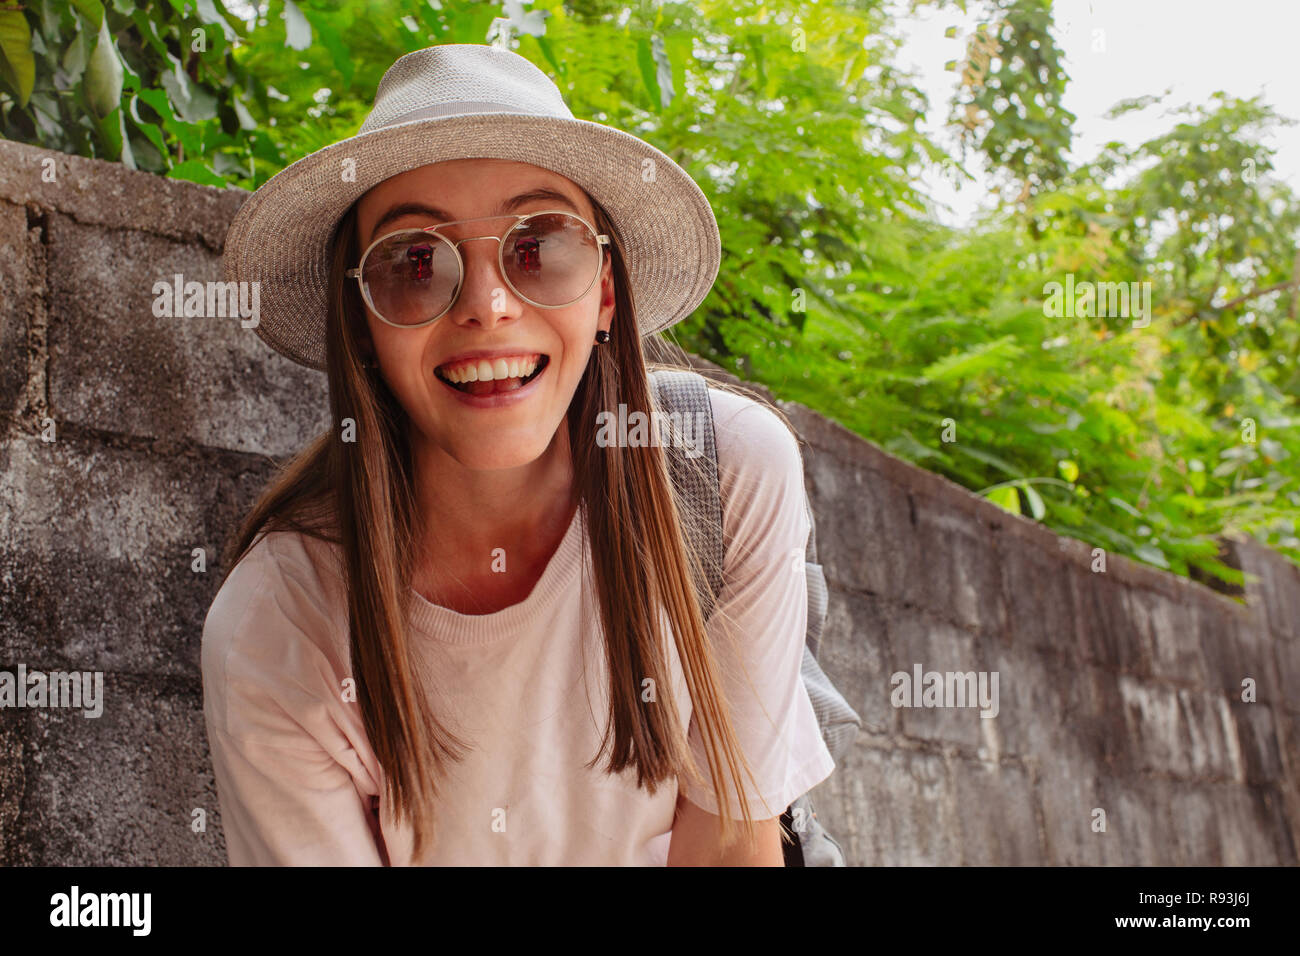 Attraente sorridente giovane donna in occhiali nei pressi di piante Foto Stock